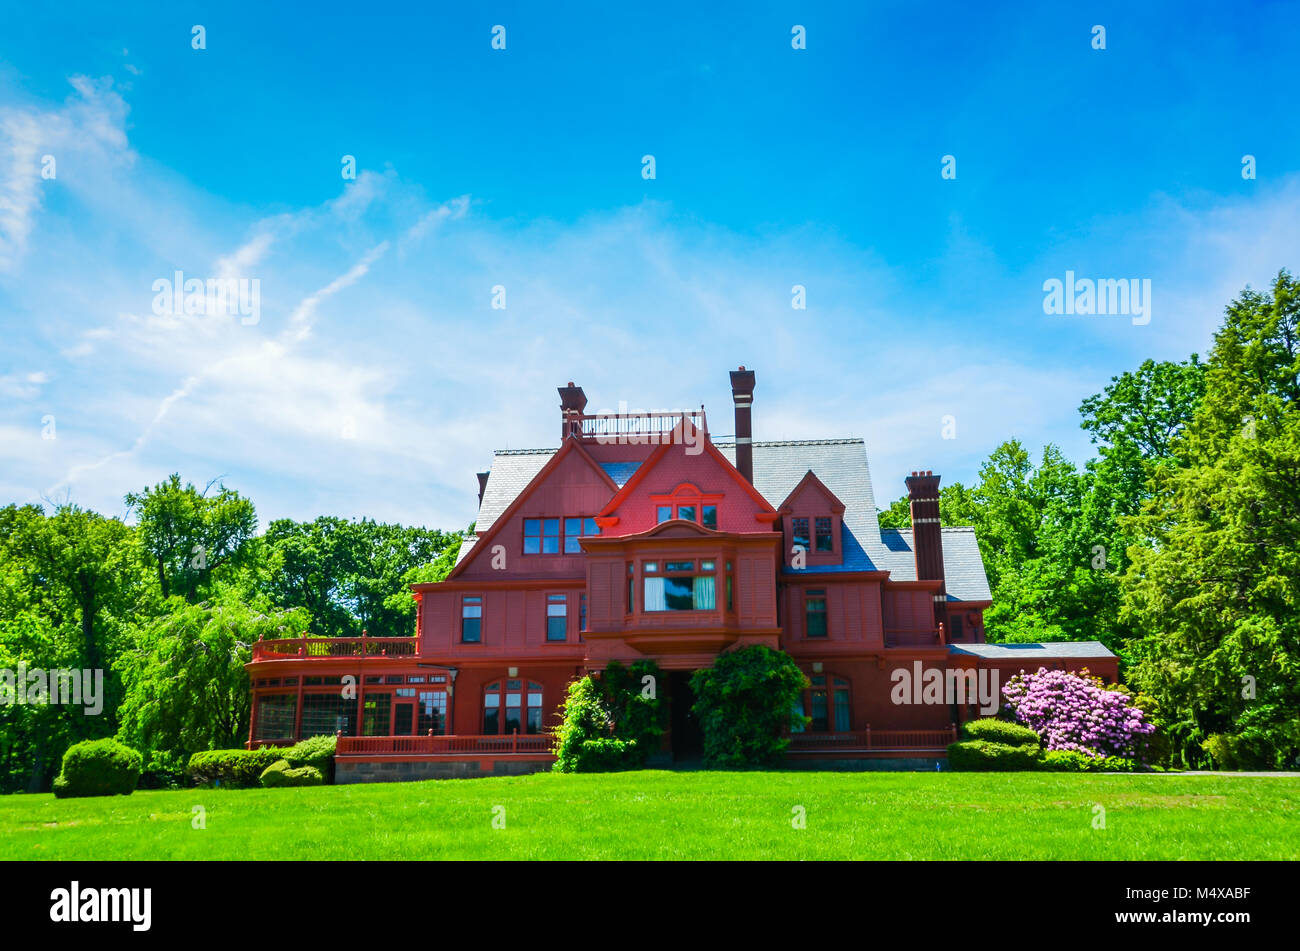 West Orange, NJ, USA. Historic Glenmont Estate at Thomas Edison National Historical Park. Stock Photo